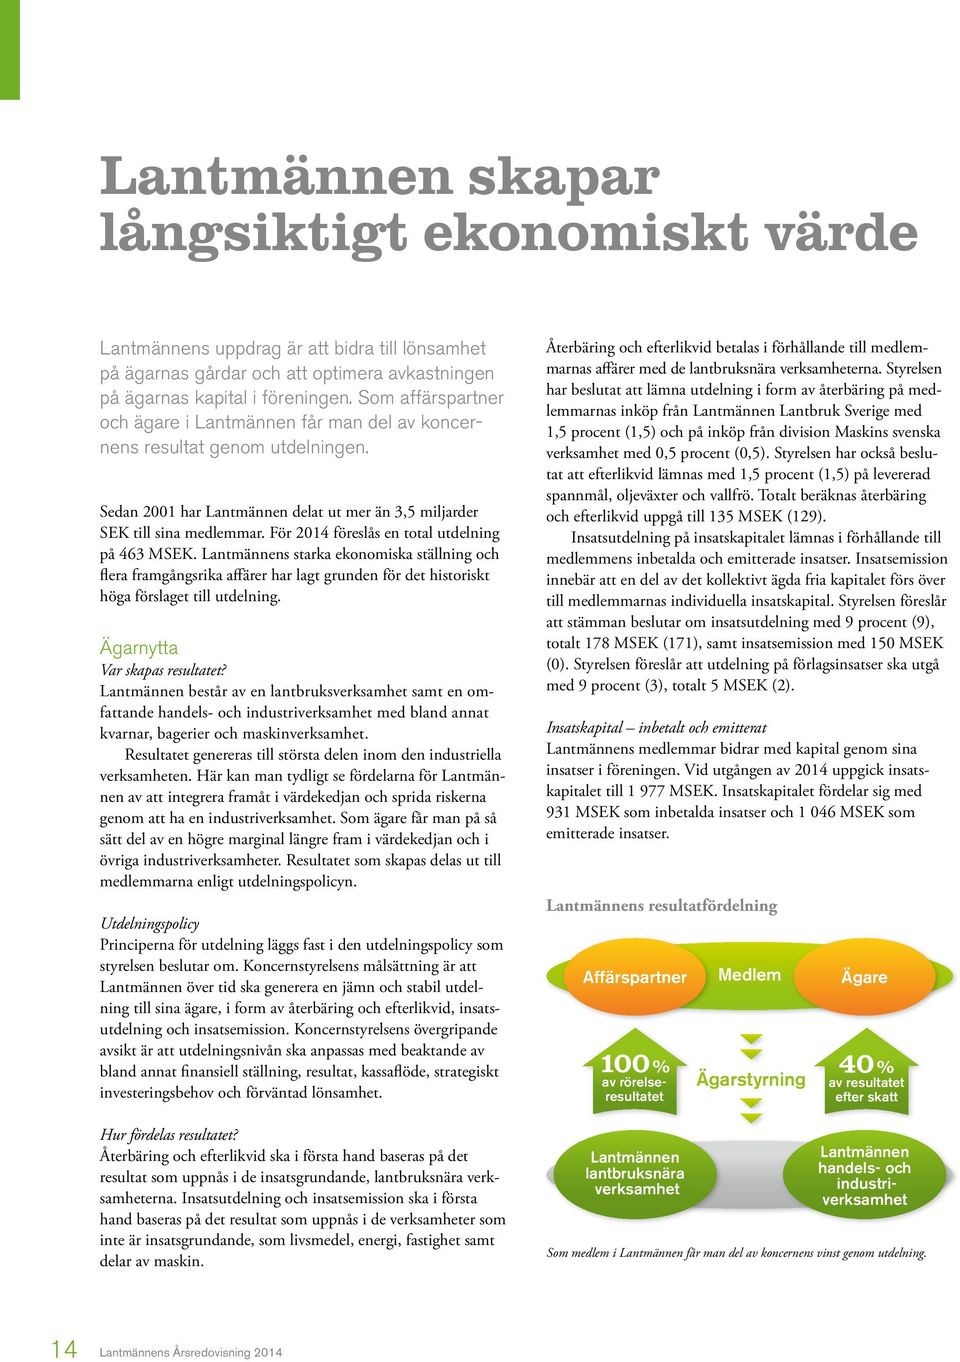 För 2014 föreslås en total utdelning på 463 MSEK. Lantmännens starka ekonomiska ställning och flera framgångsrika affärer har lagt grunden för det historiskt höga förslaget till utdelning.